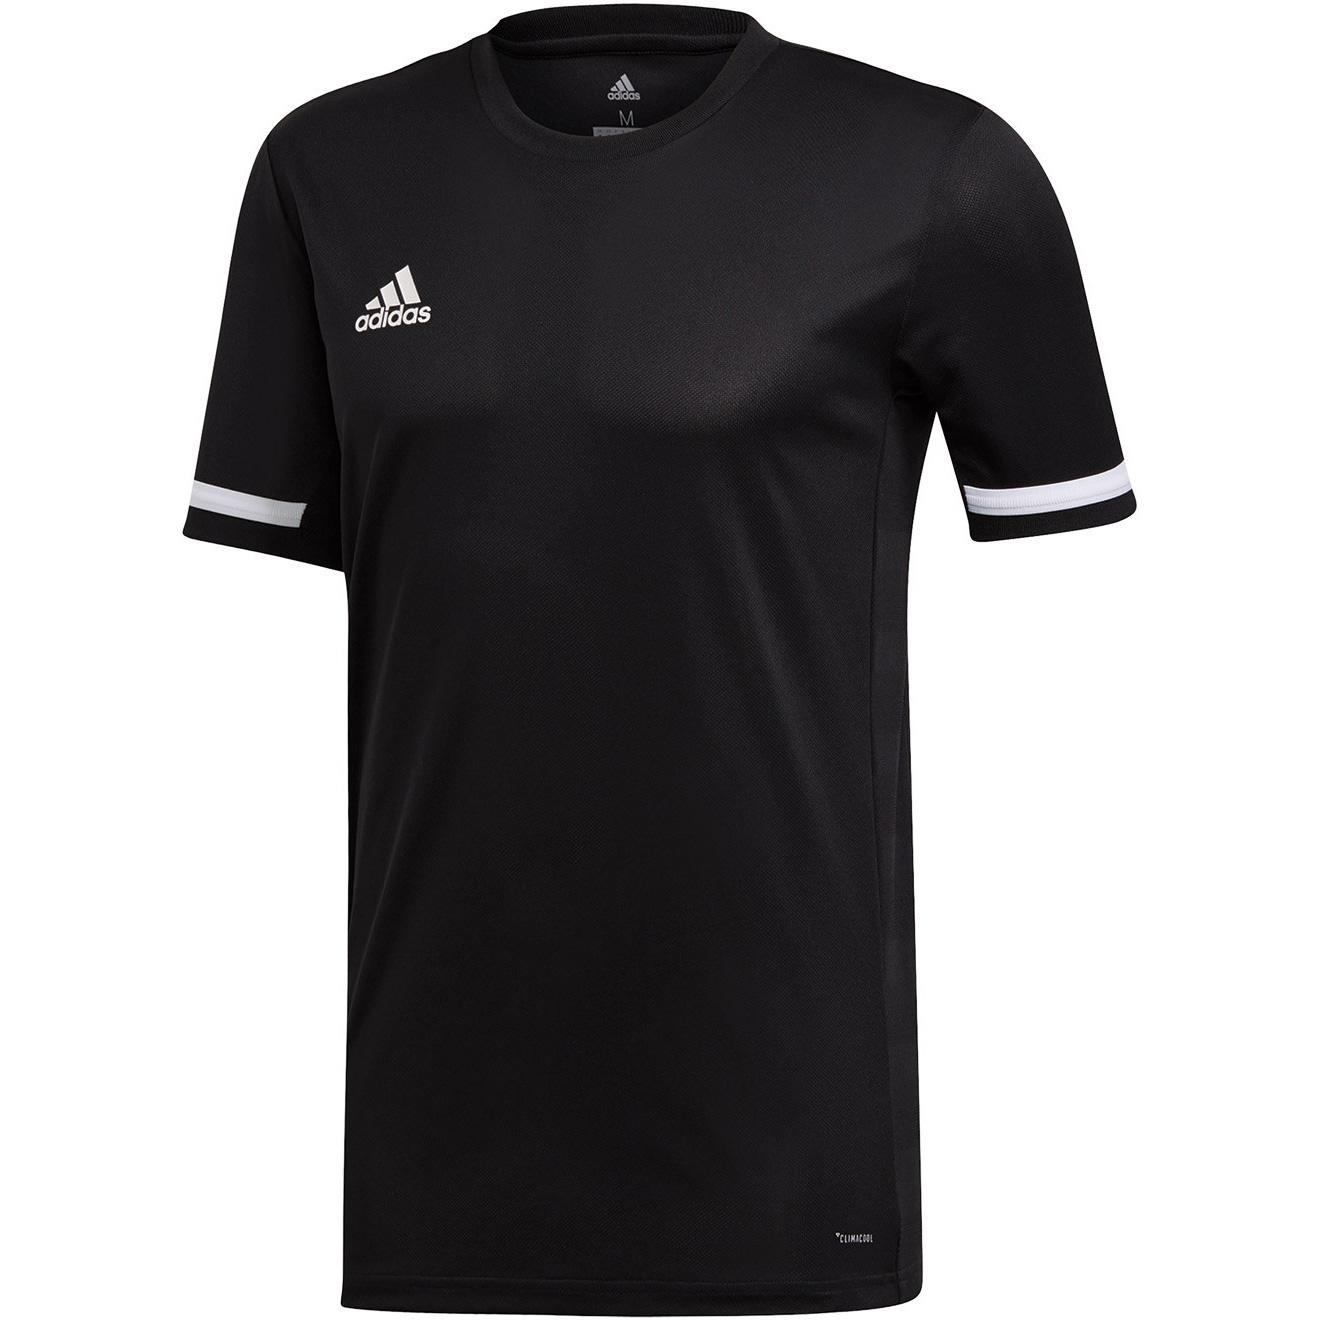 Adidas Mens T19 Short Sleeved Jersey - Black - Tennisnuts.com